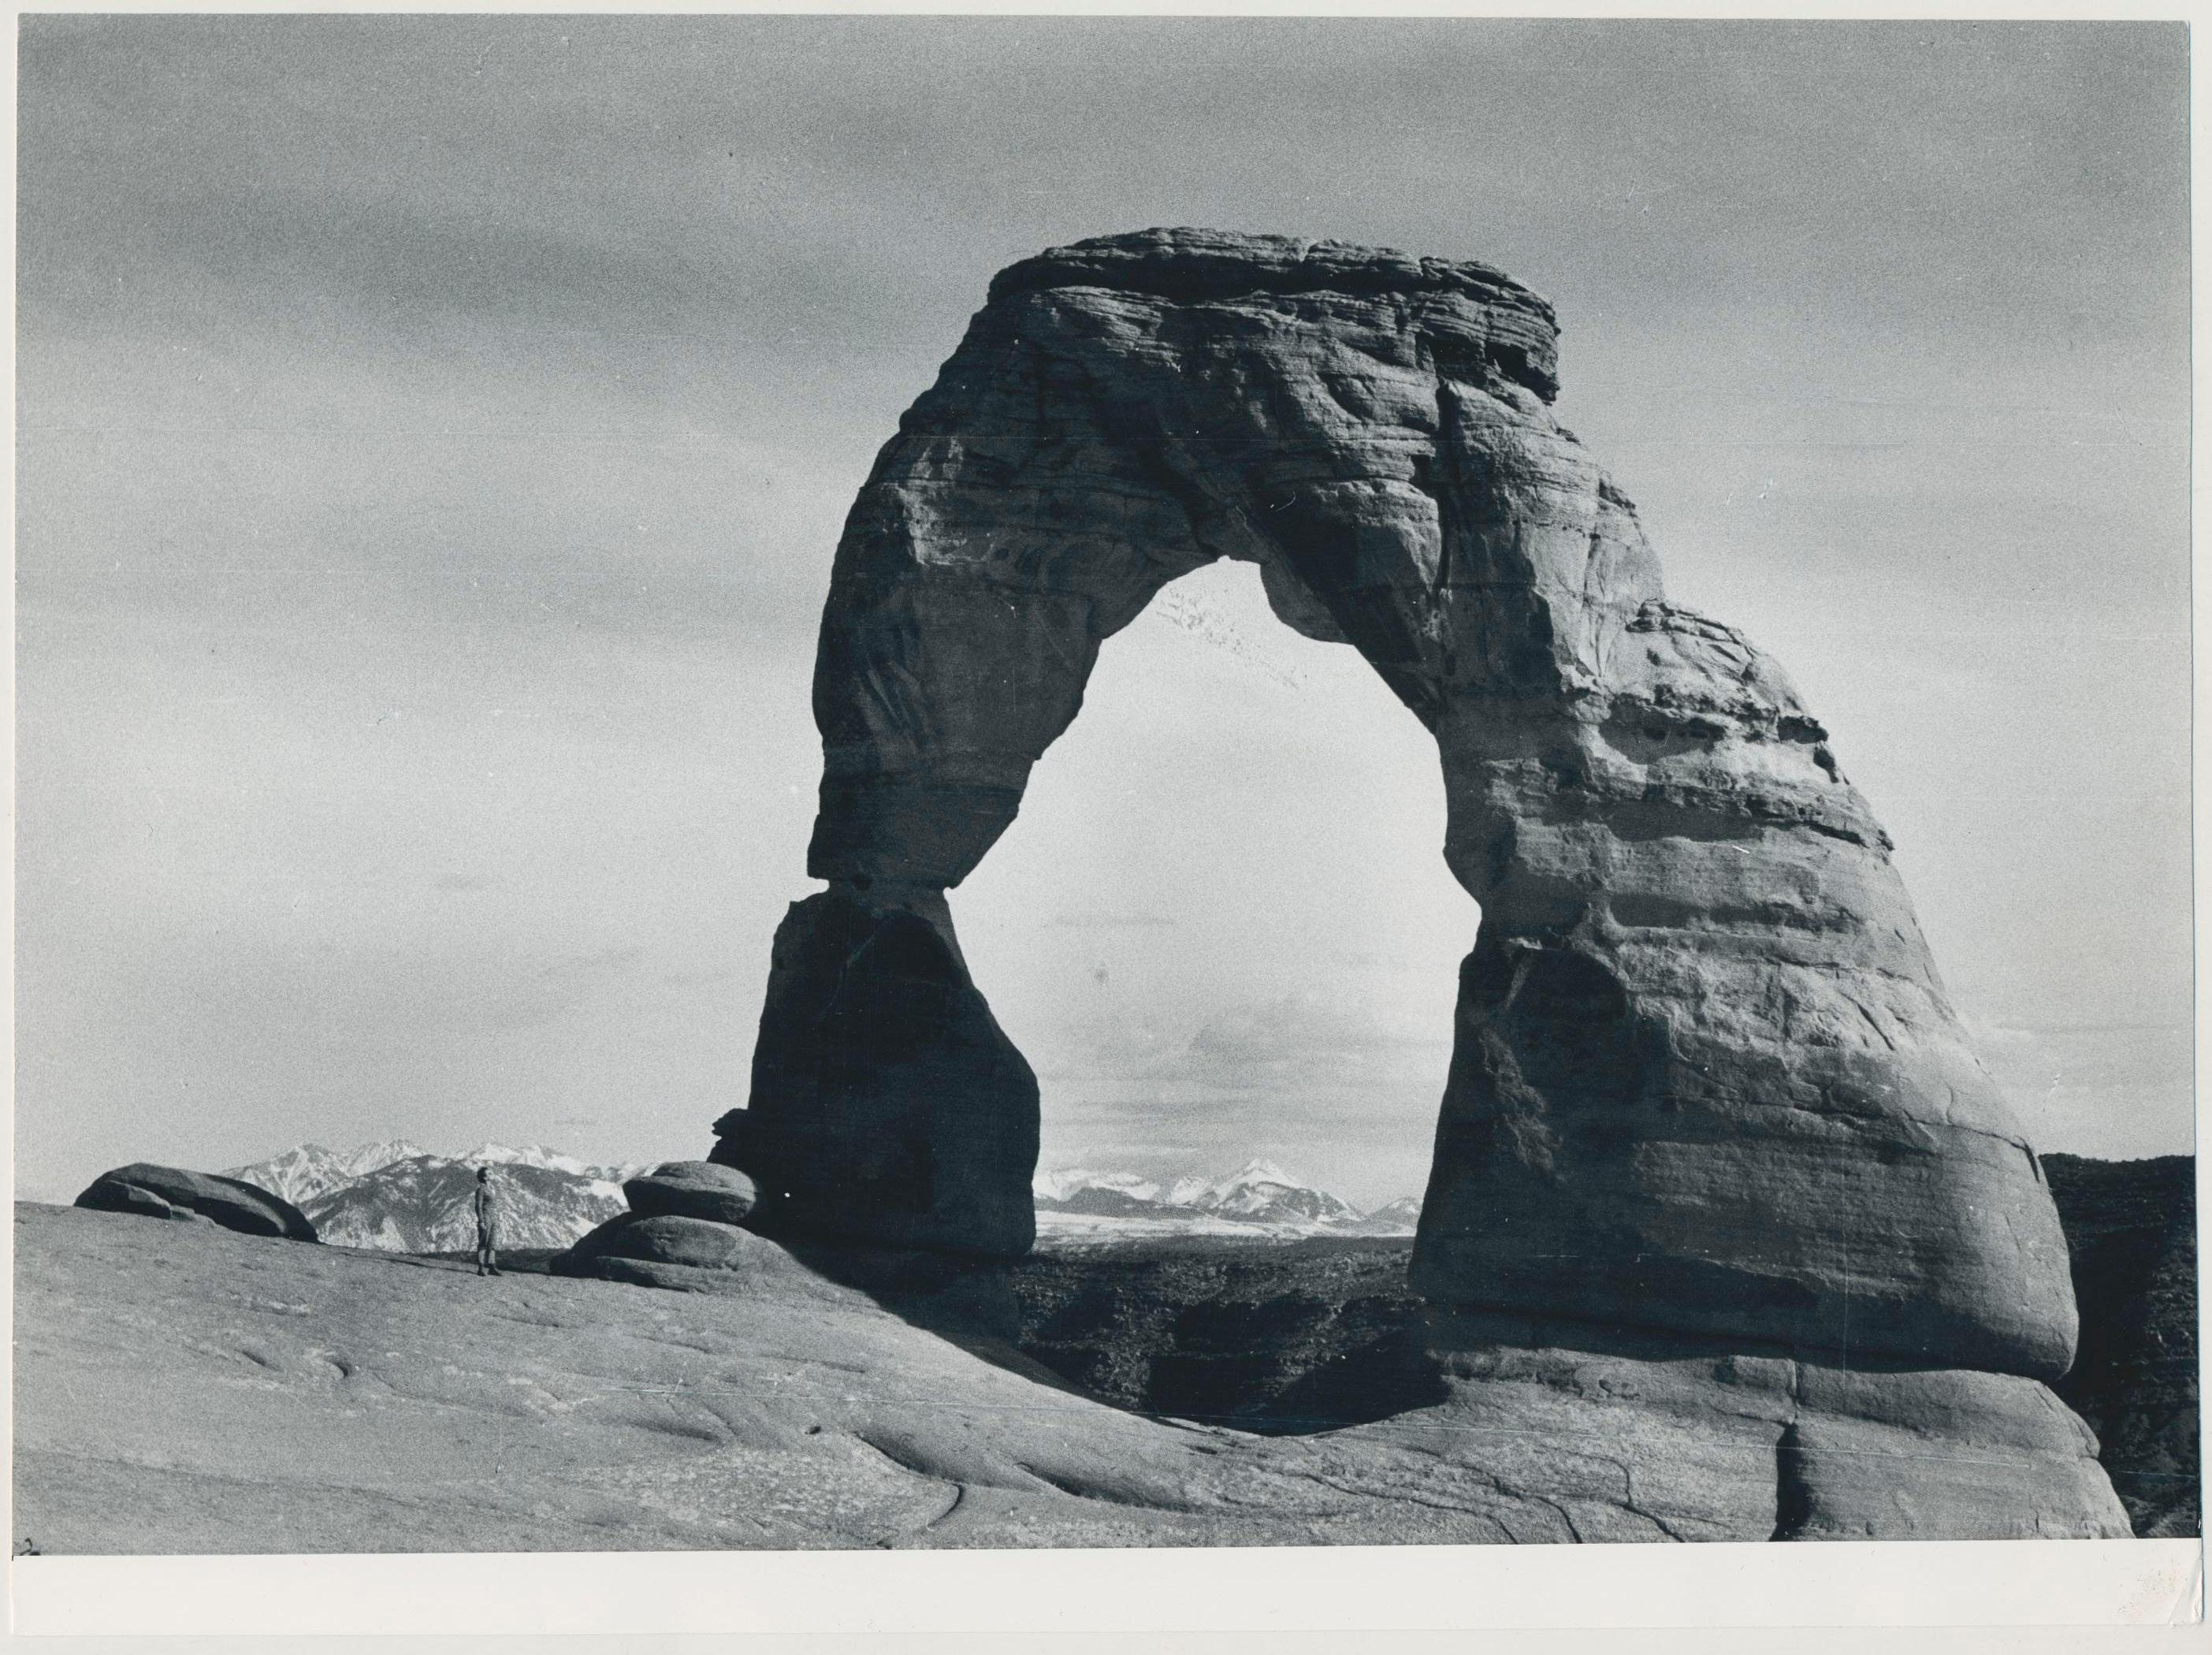 Arches Nationalpark, Utah, noir et blanc, États-Unis, années 1960, 17,3 x 23,3 cm